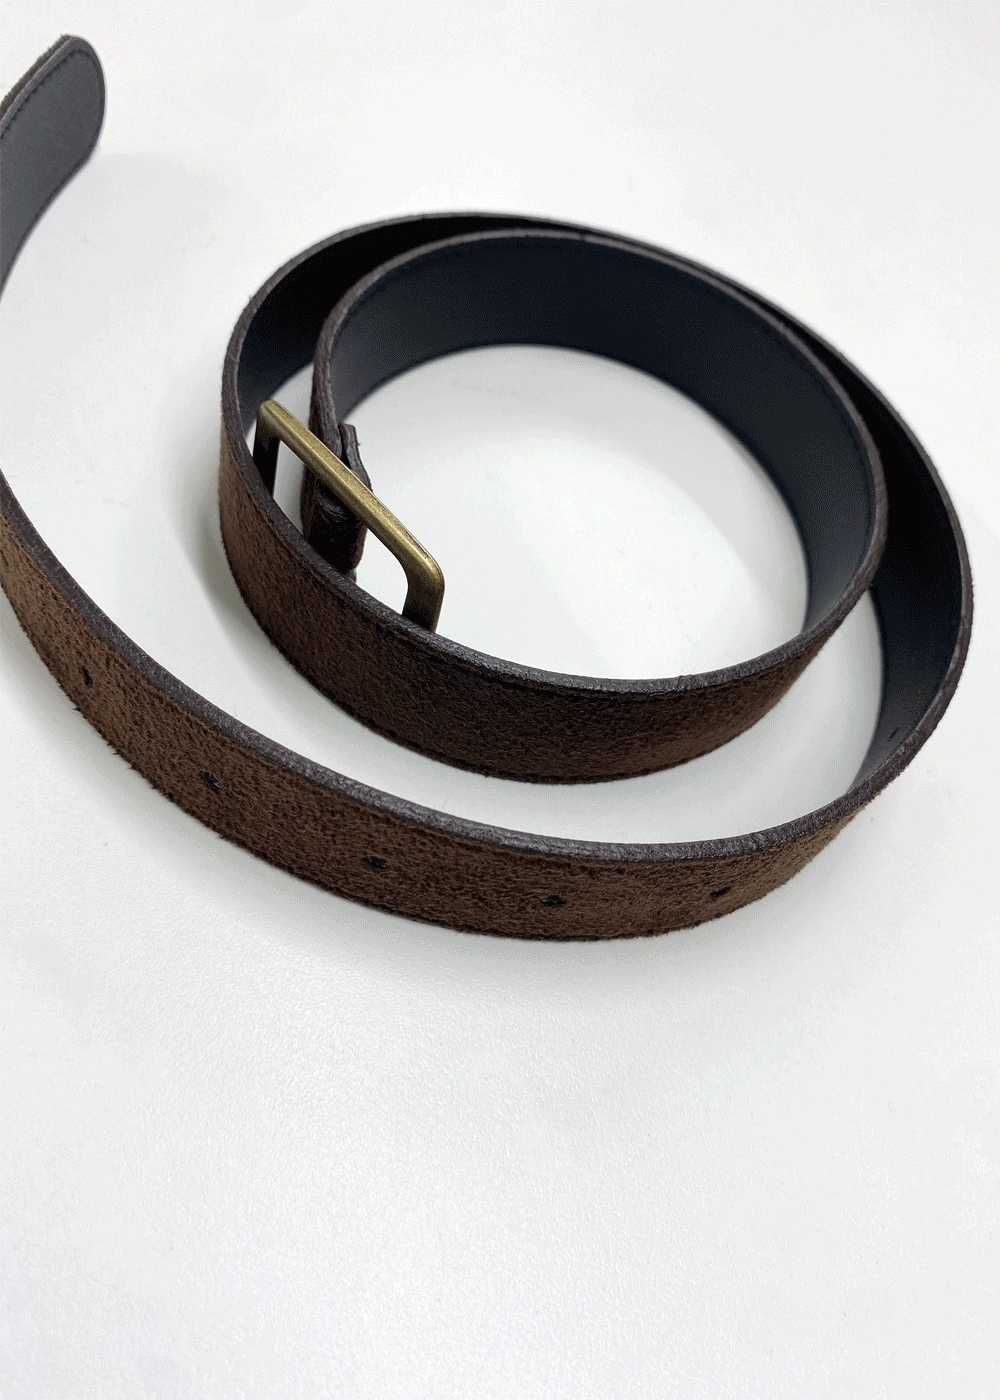 Suede brass belt